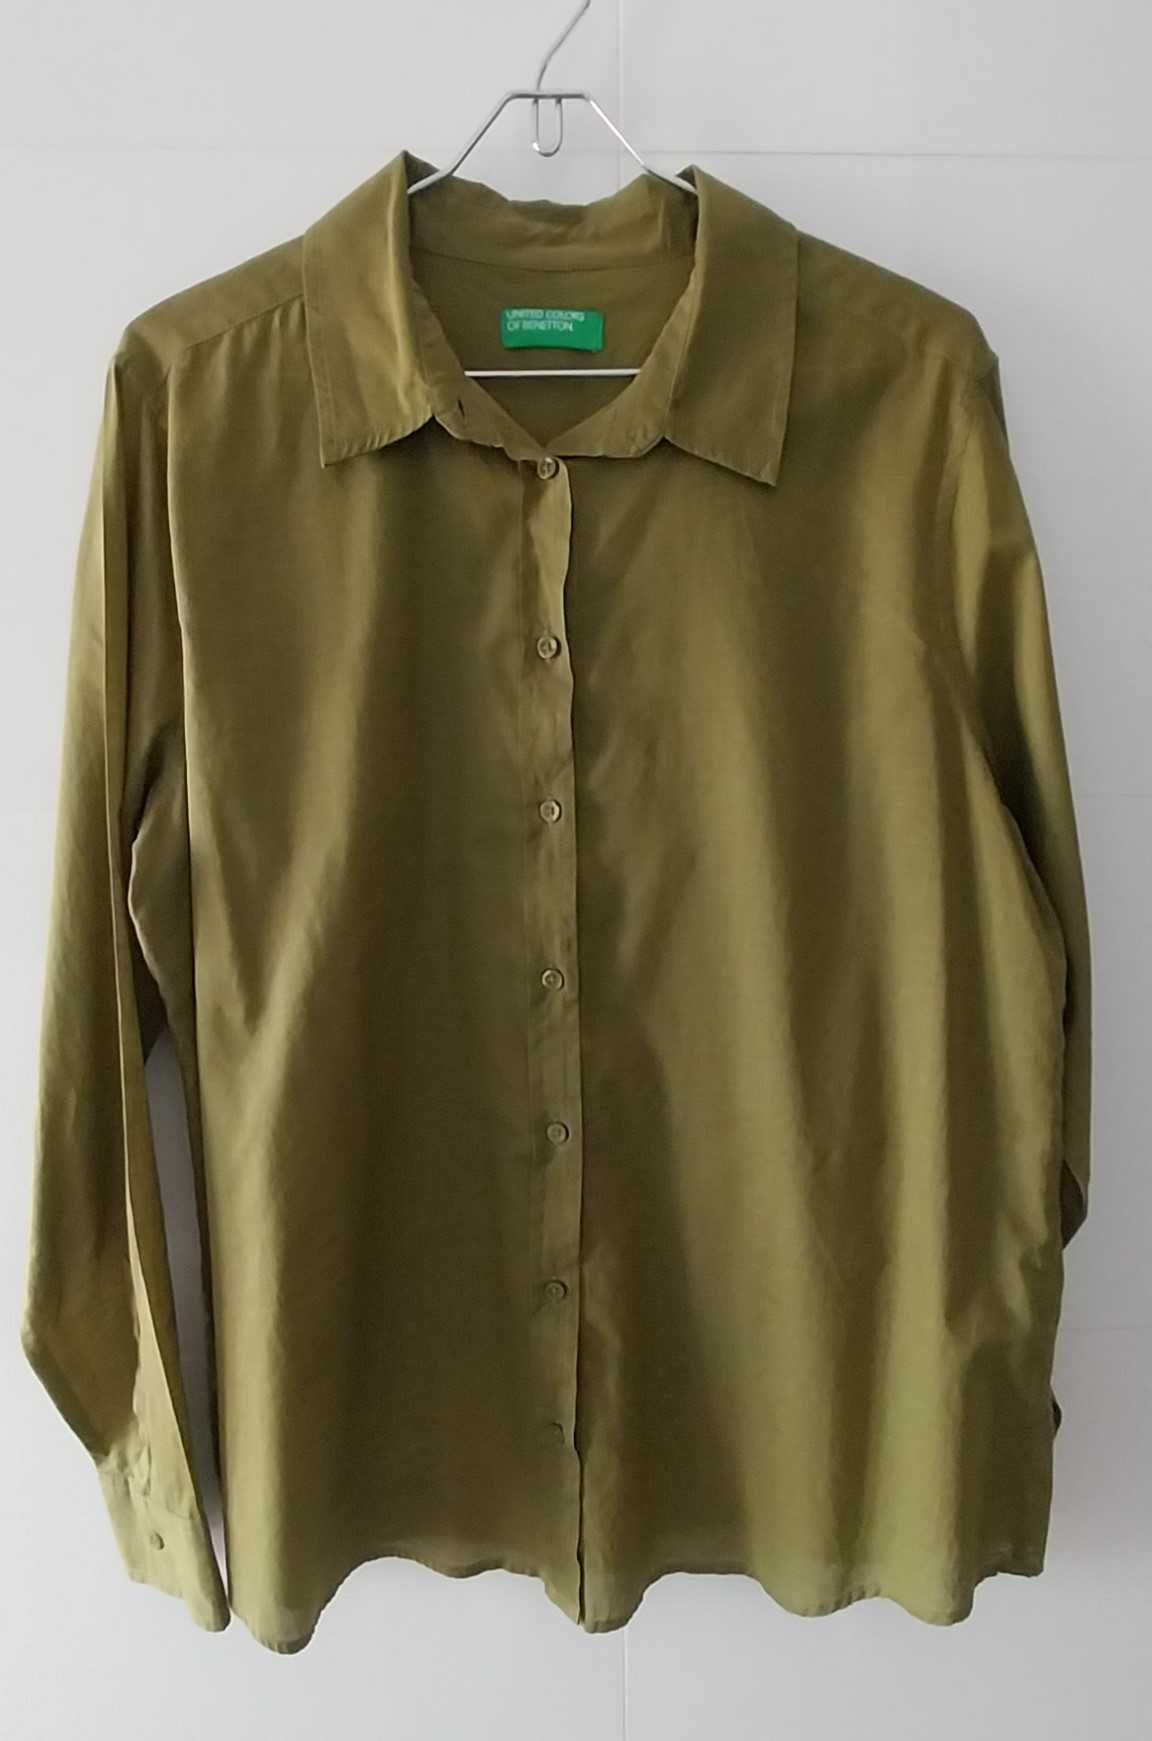 United Colors of Benetton  -  Camisas em algodão puro